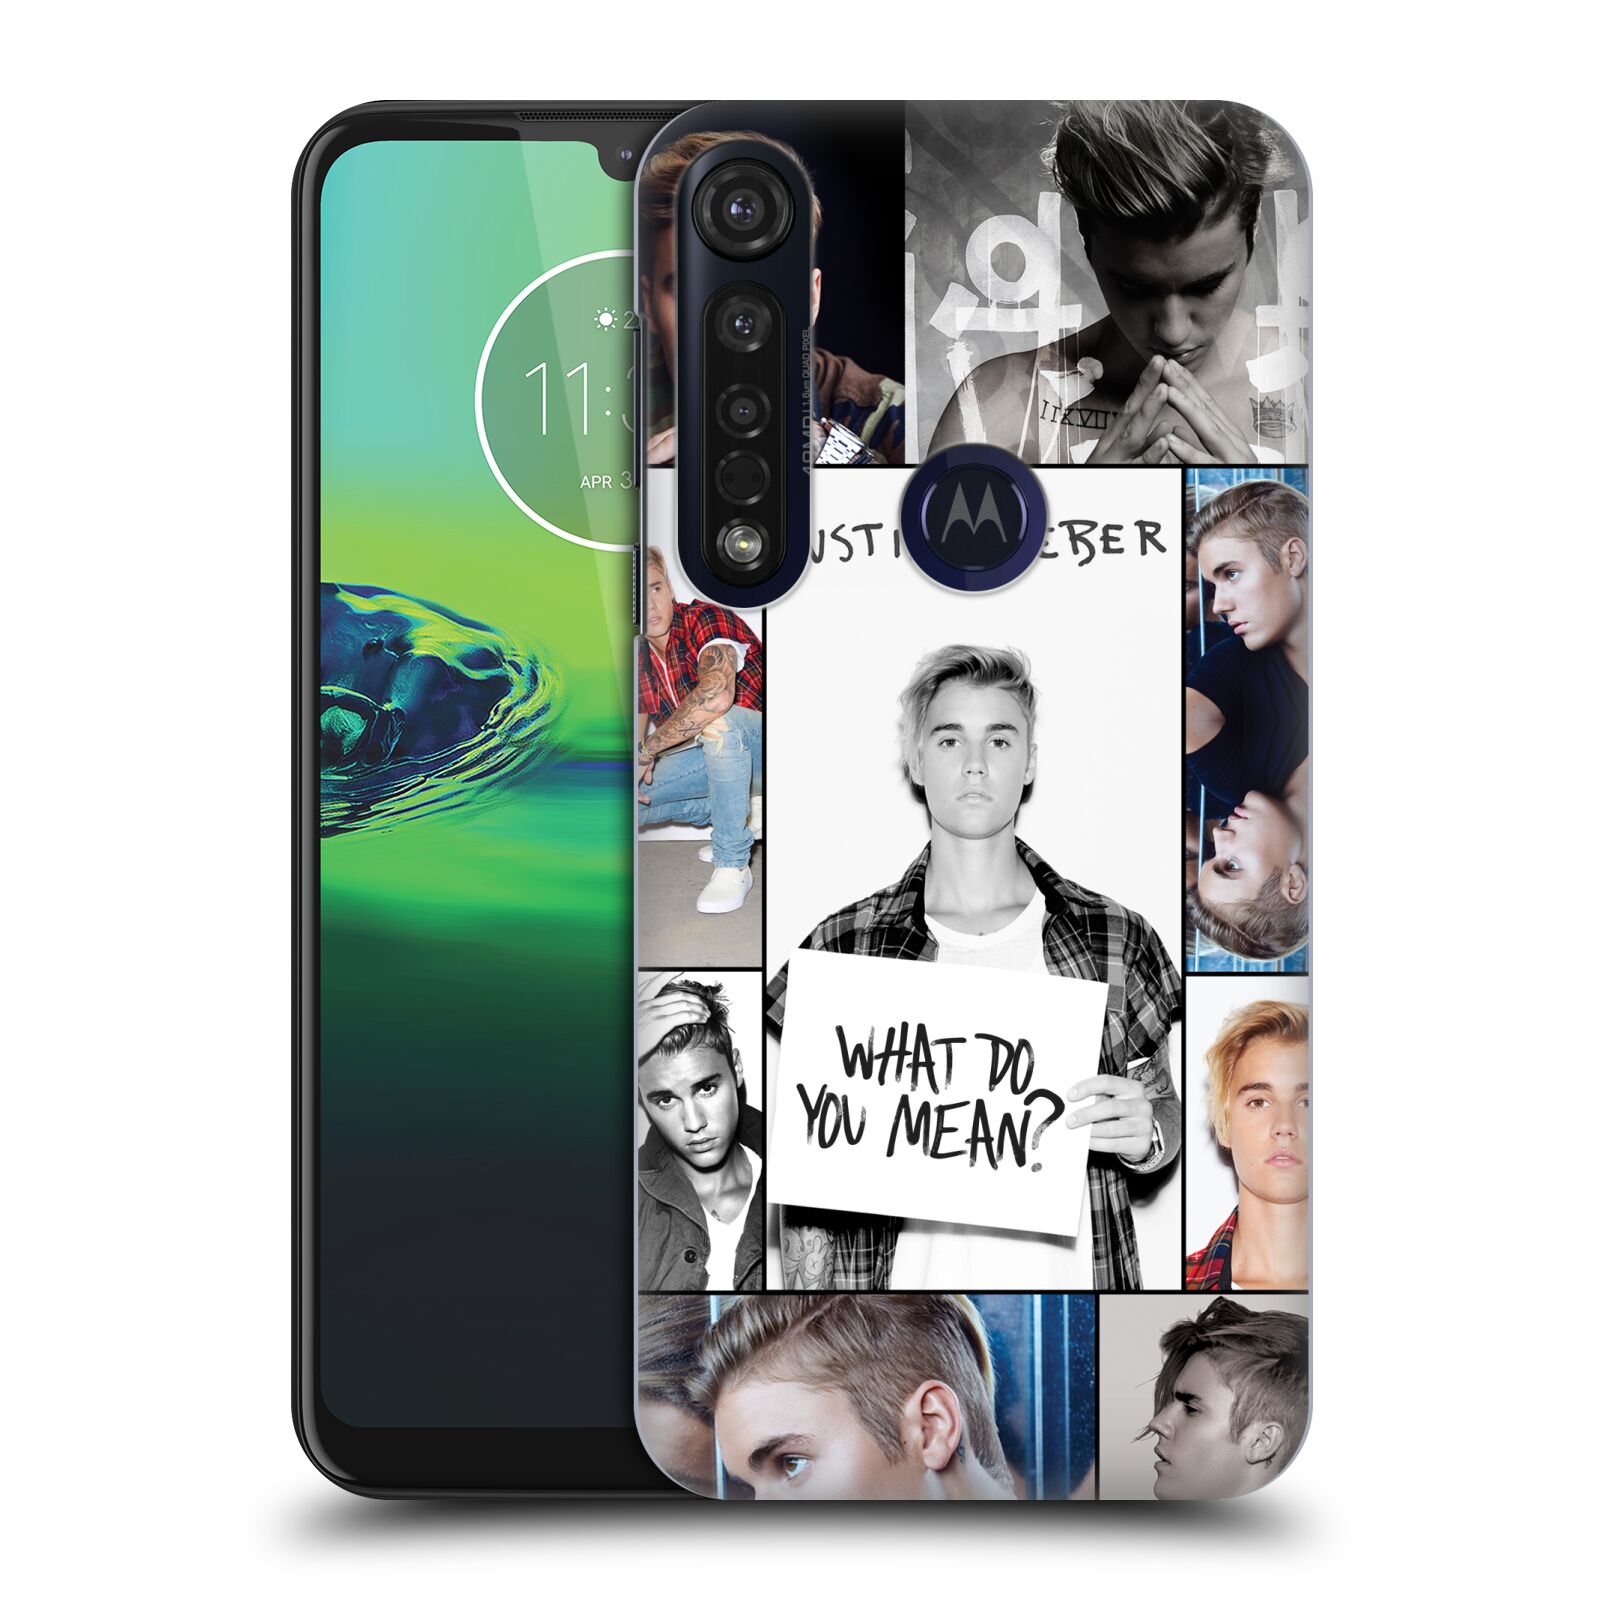 Pouzdro na mobil Motorola Moto G8 PLUS - HEAD CASE - Justin Bieber foto Purpose malé fotky